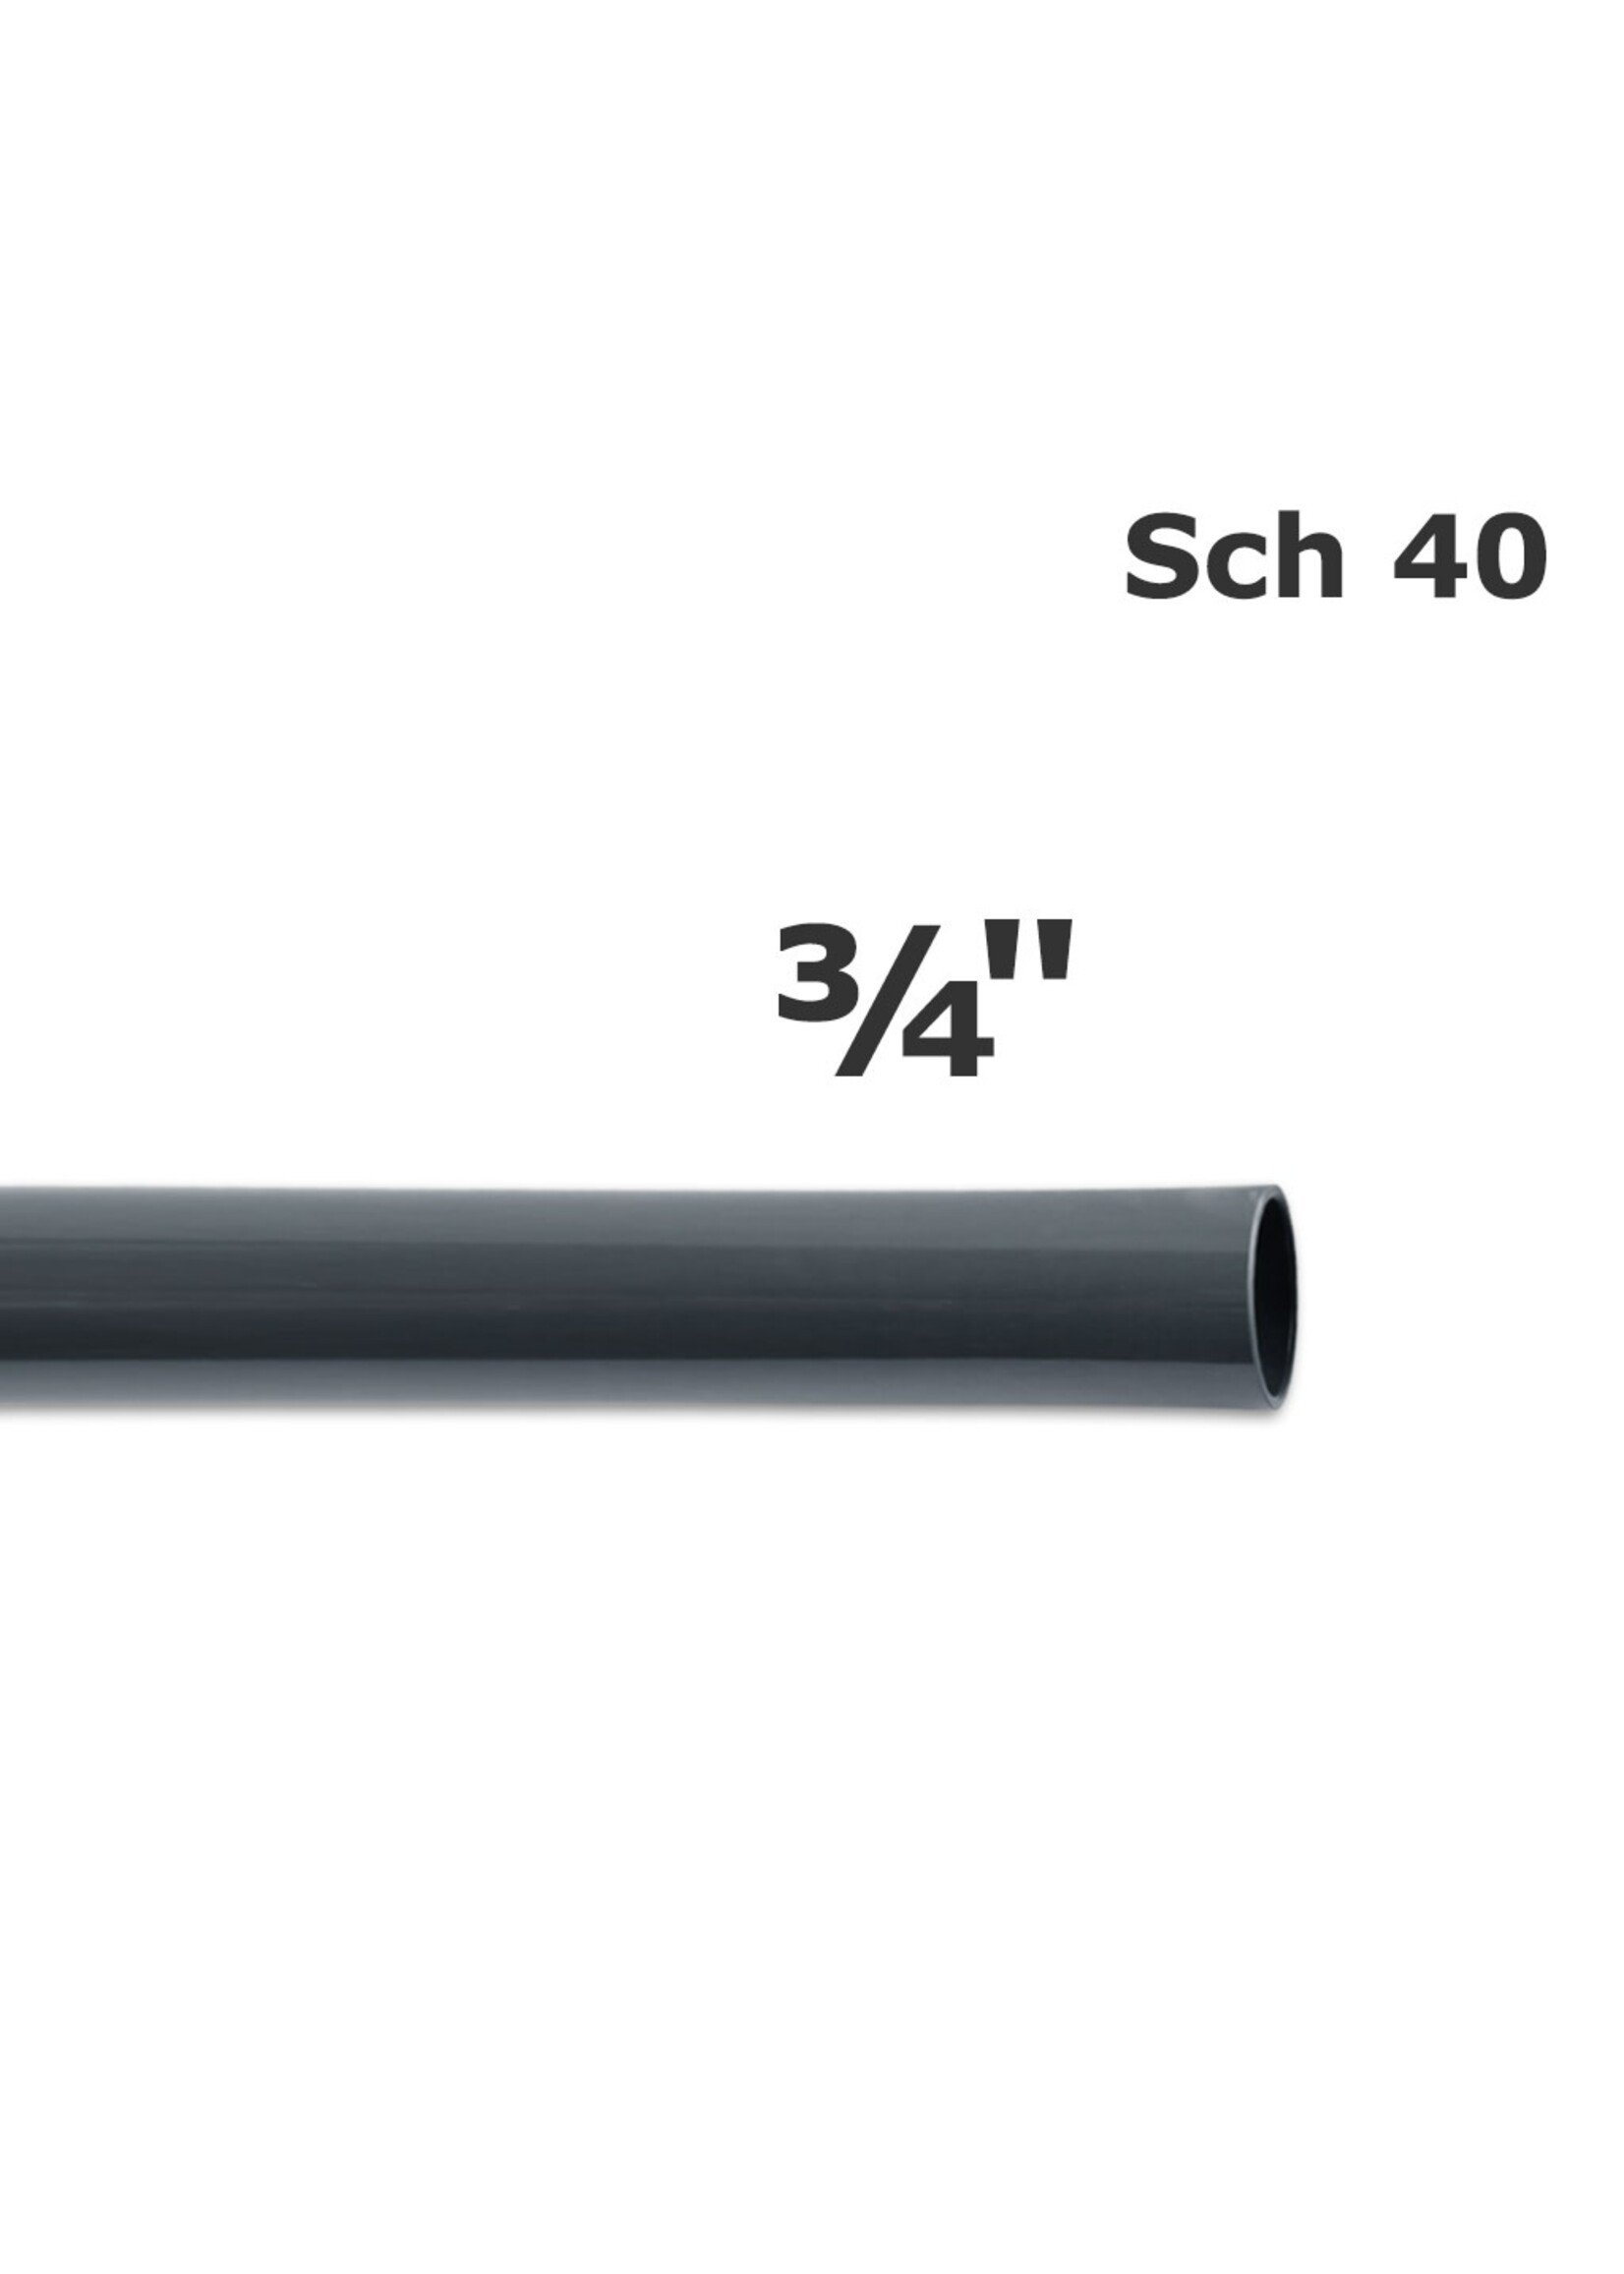 PIPELINE PVC SCH 40- 3/4" GRAY (76 G0075) (76 G0075)